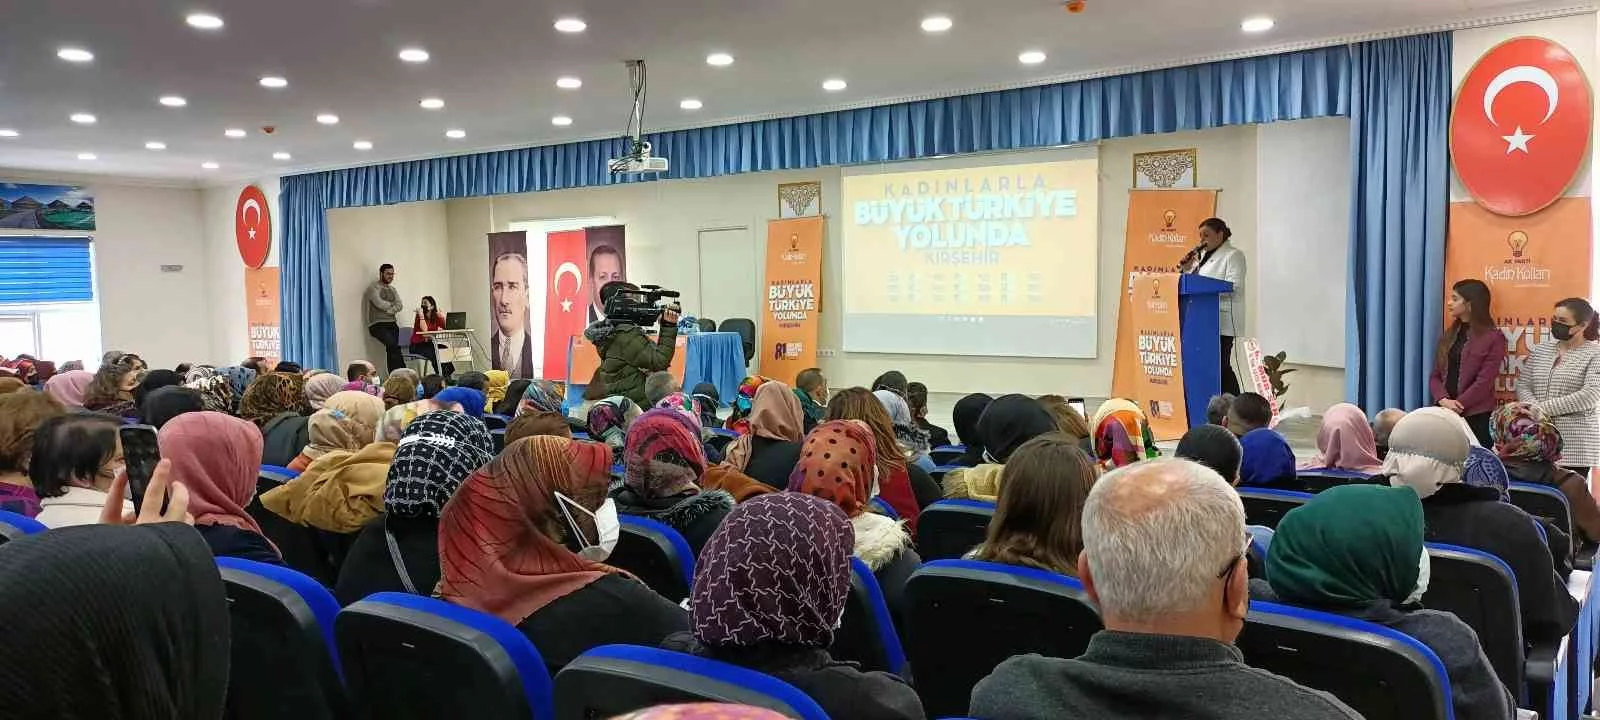 AK Partiden Kadın Emeği, Türkiyenin İstikbali Buluşmaları konferansı verildi